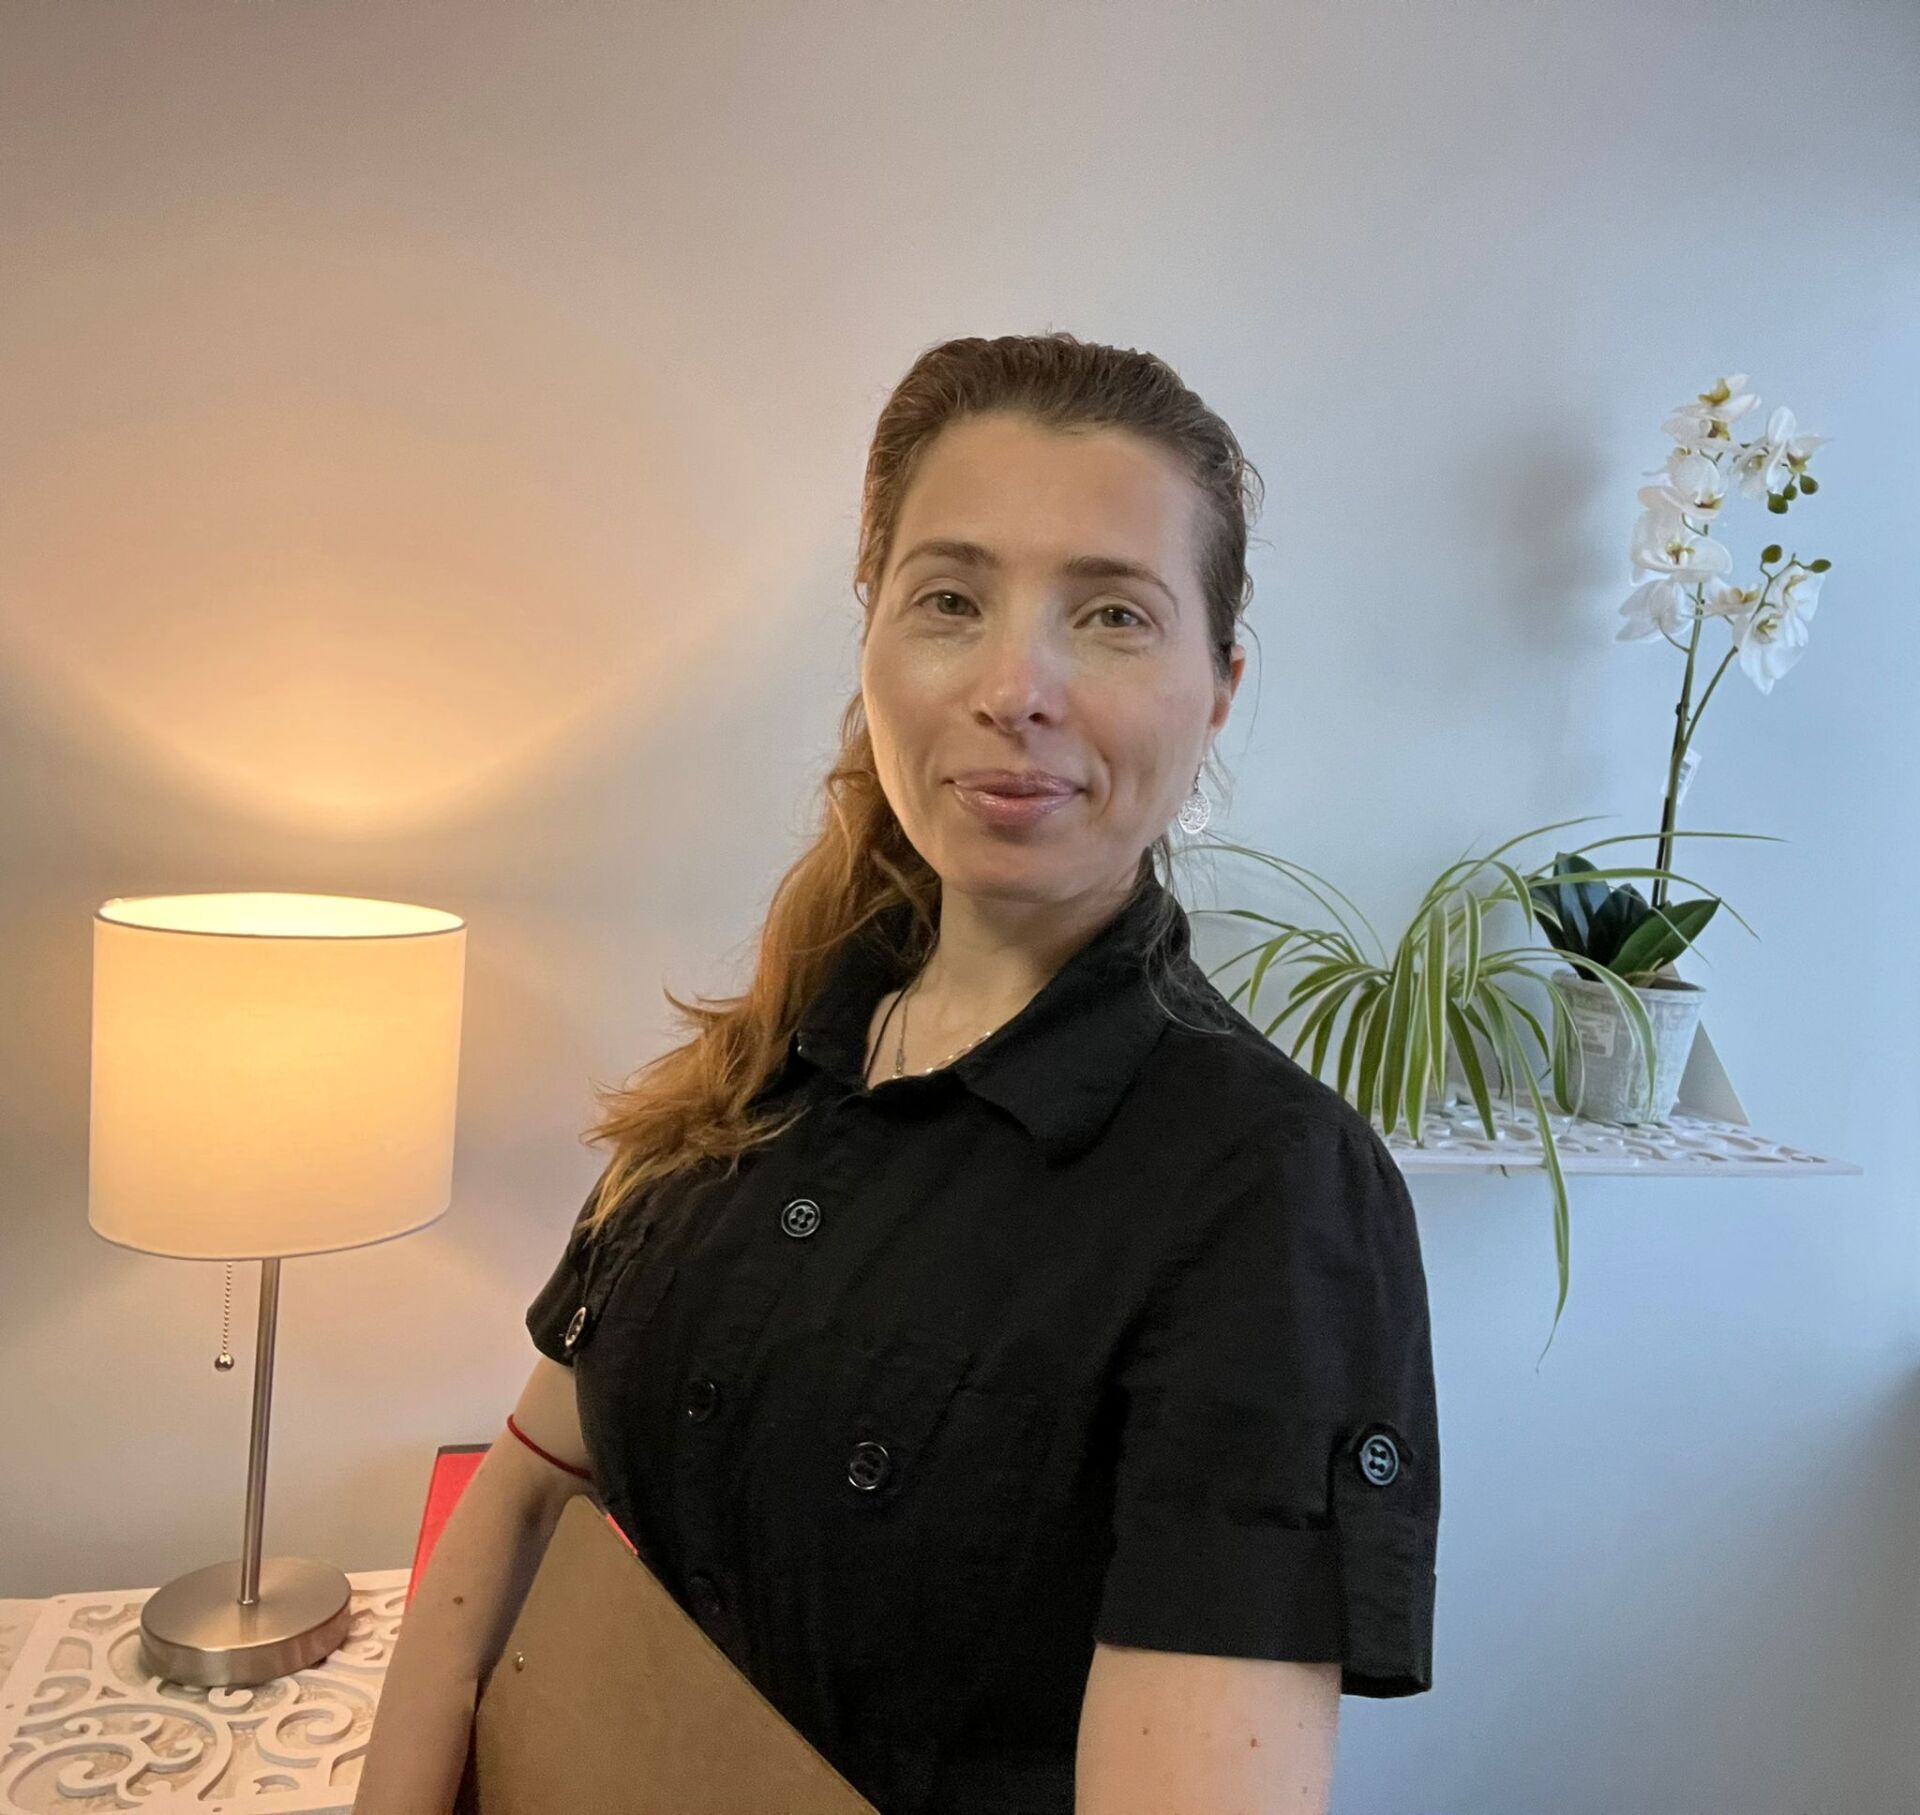 Gheorghita Bran Visan - Registered Massage Therapist